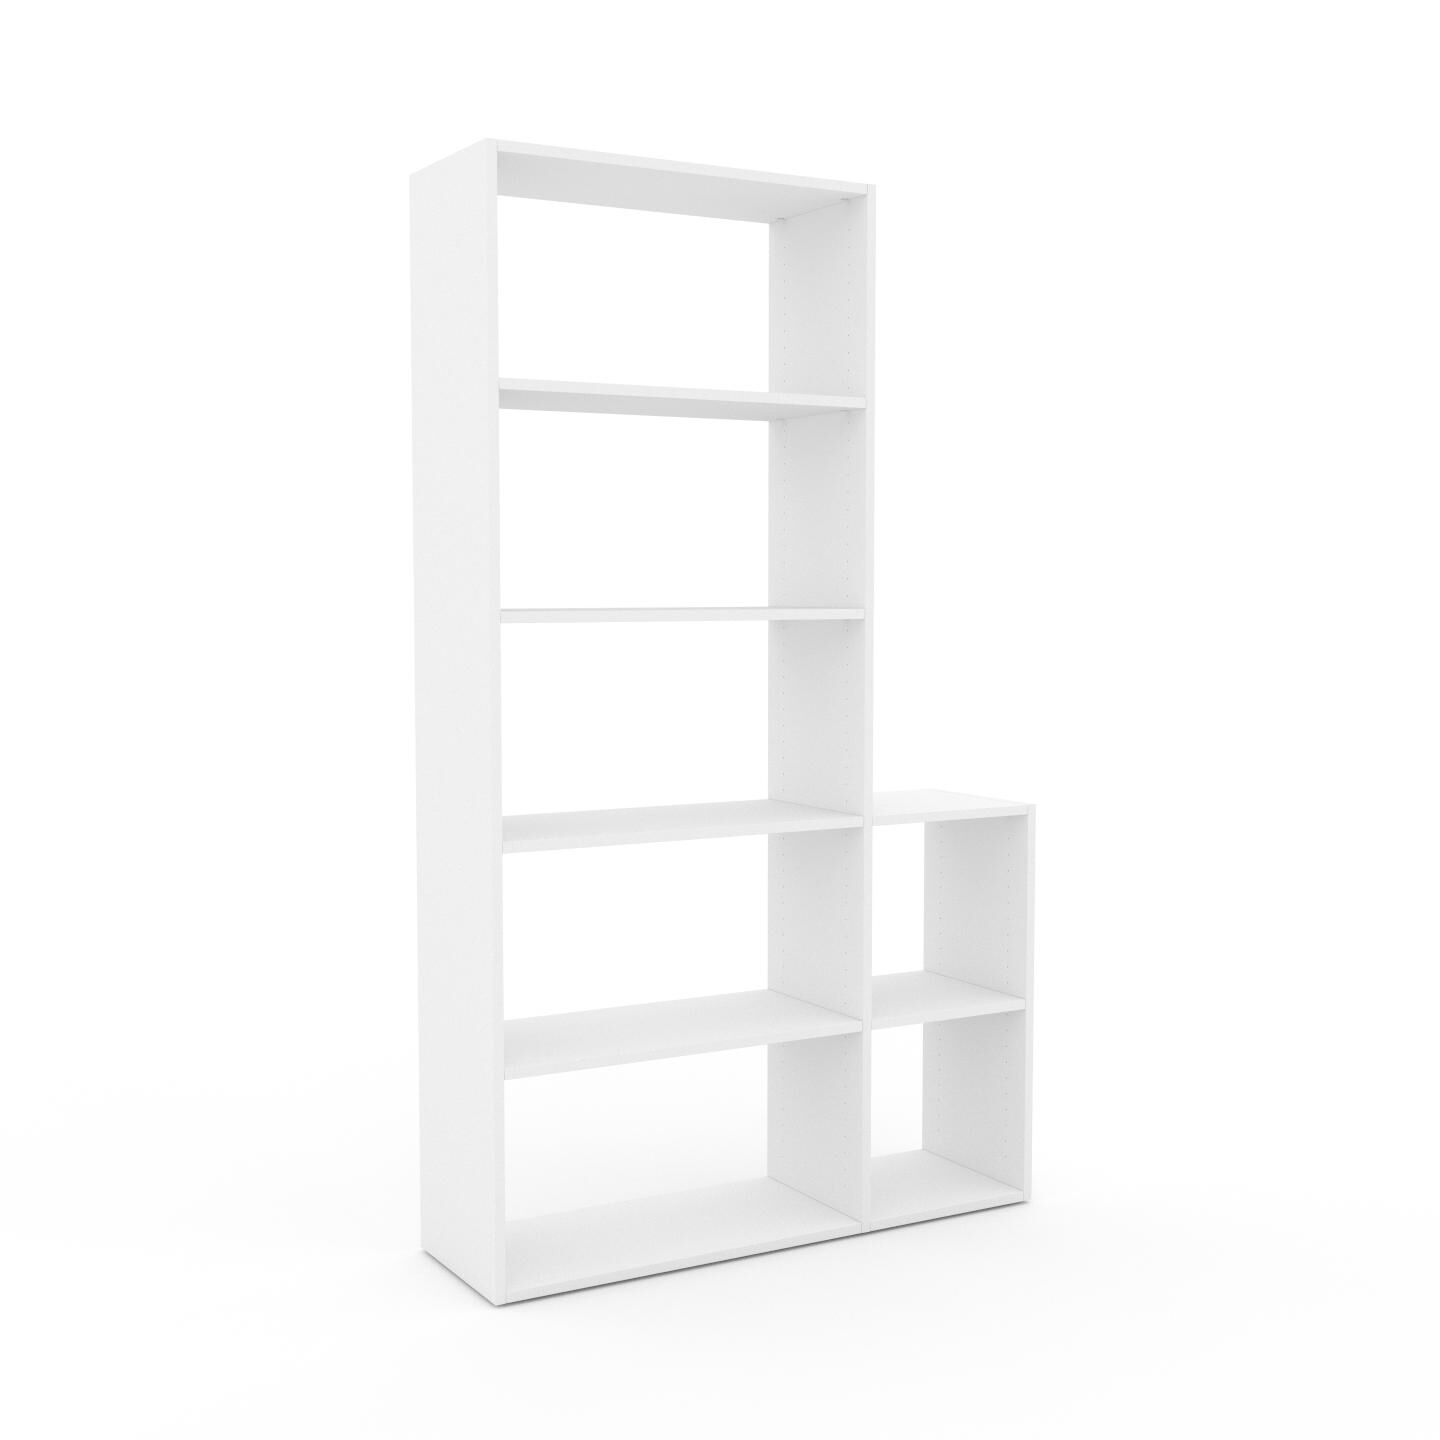 MYCS Bücherregal Weiß - Modernes Regal für Bücher: Hochwertige Qualität, einzigartiges Design - 116 x 195 x 35 cm, Individuell konfigurierbar